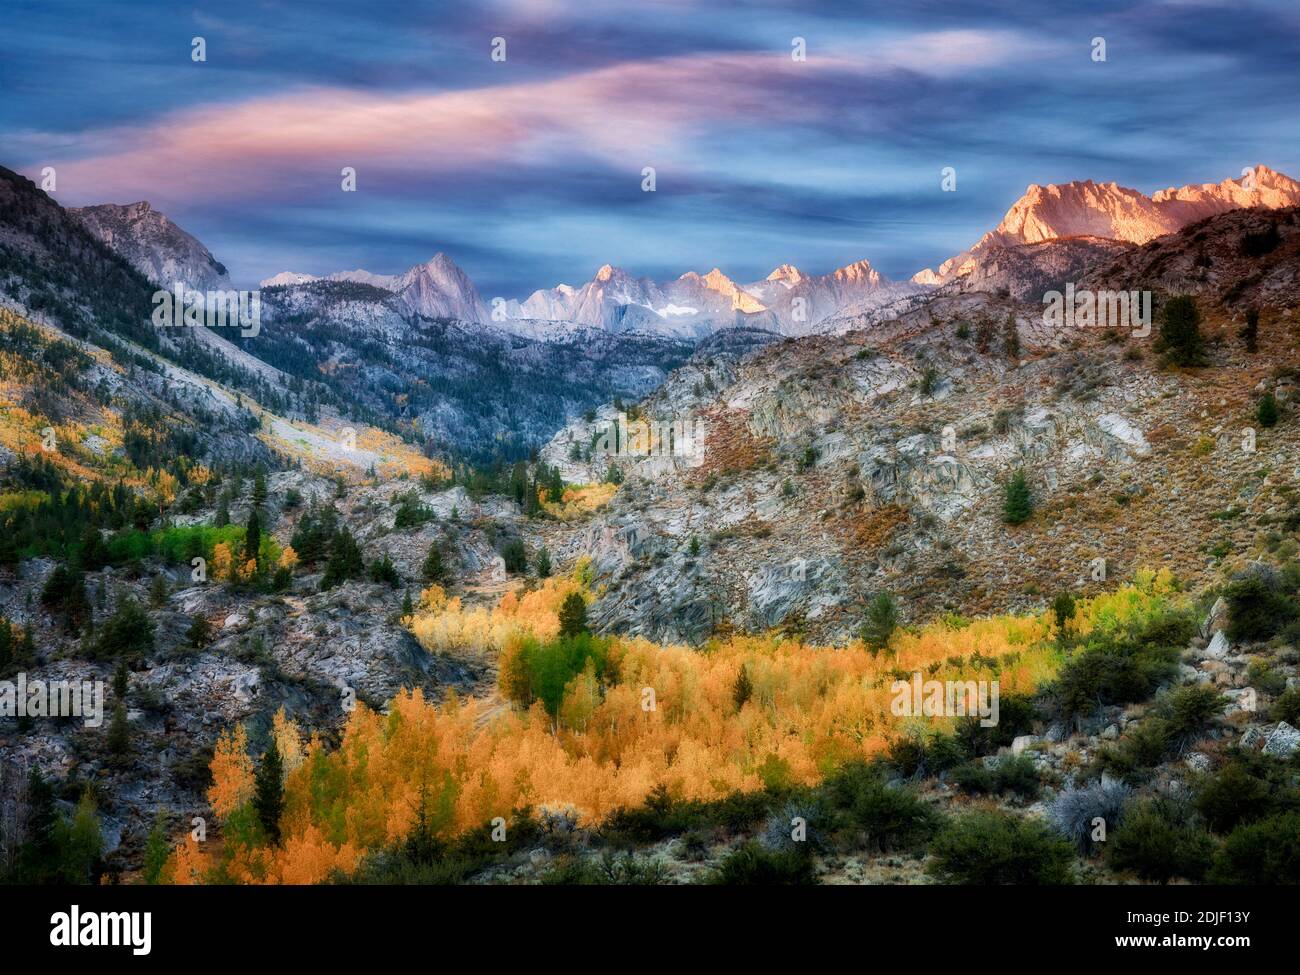 Montagnes de l'est de la Sierra avec la couleur de l'automne au lever du soleil. Forêt nationale d'Inyo. Californie cette image a un ciel ajouté. Banque D'Images